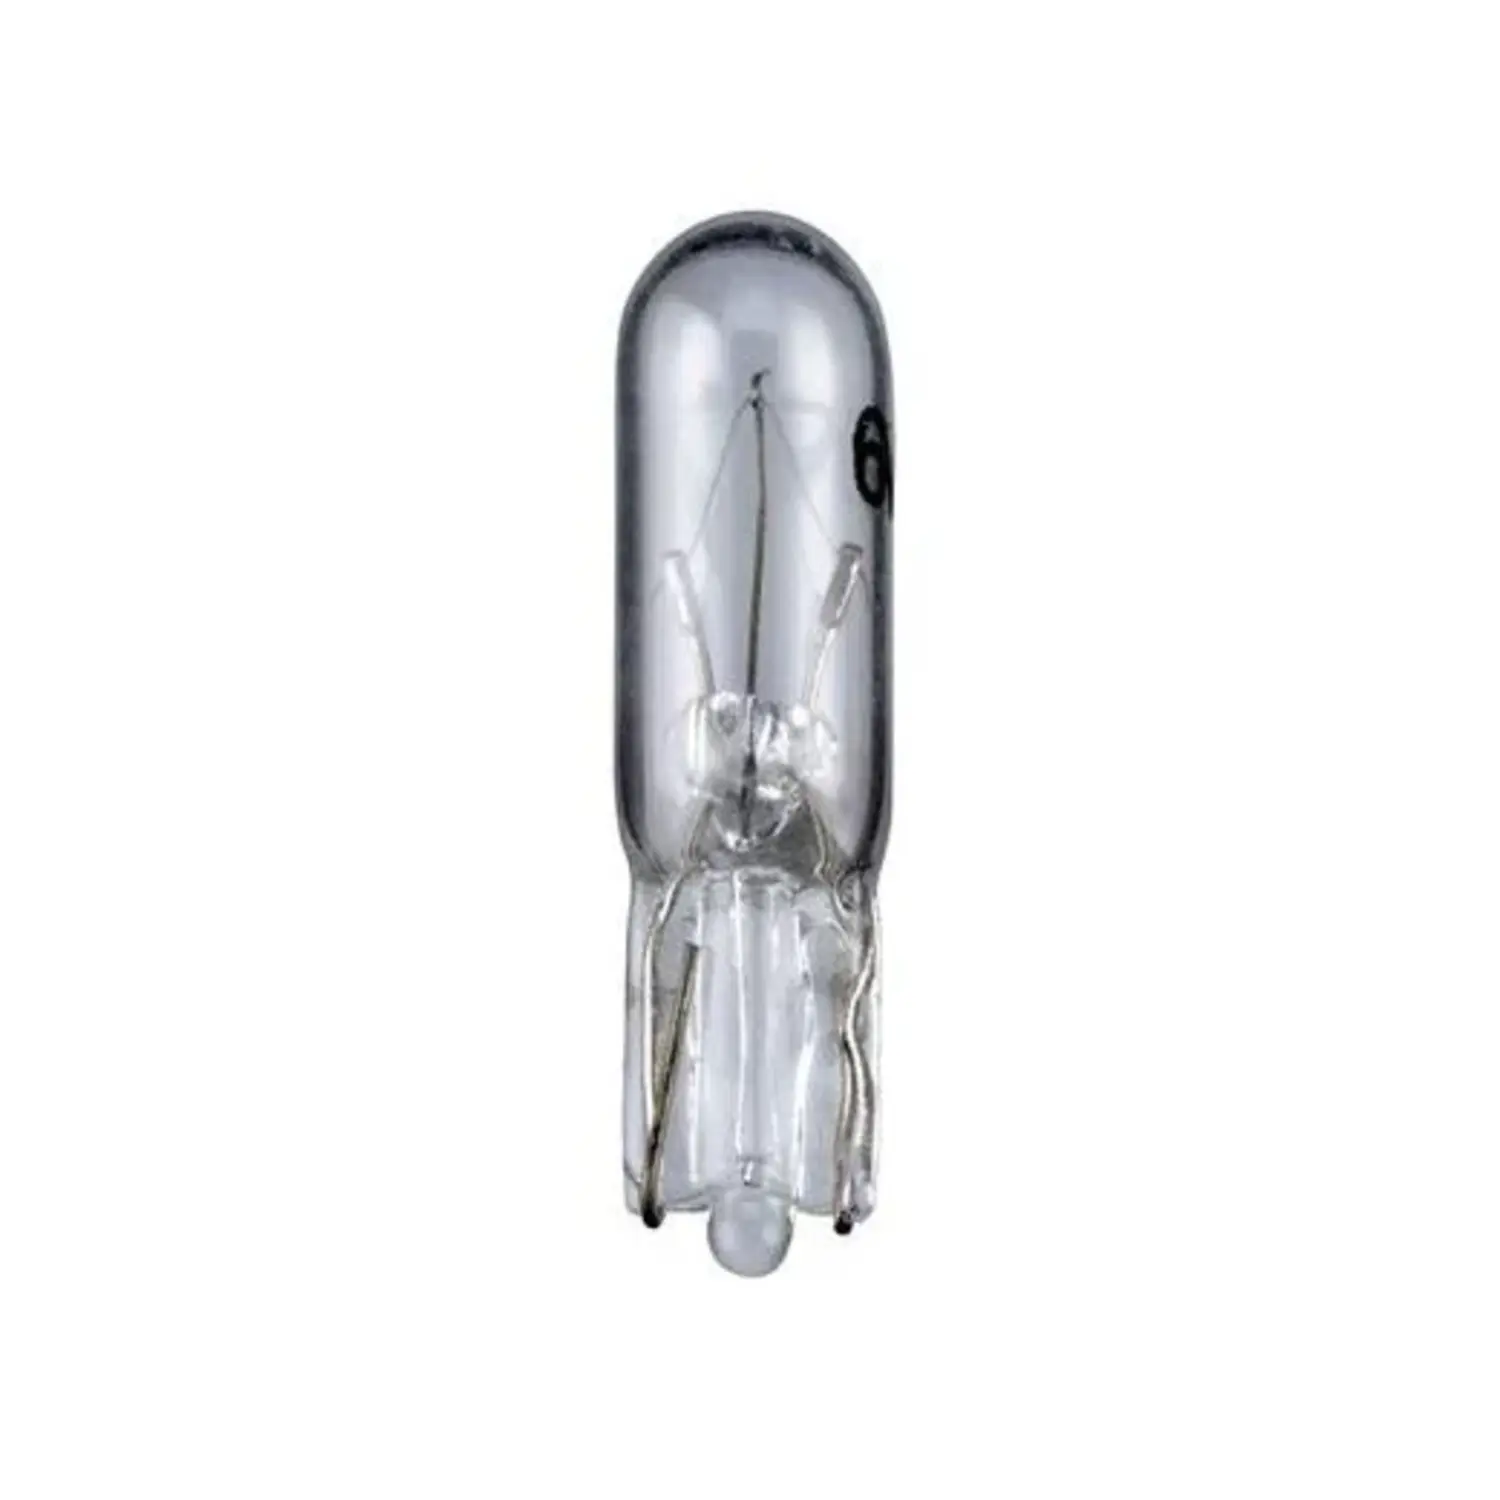 immagine del prodotto lampadina tutto vetro base w2x4.6d cruscotto auto trasparente CE bianco caldo 1 pezzo 12 volt 1,20 watt wnt 9615